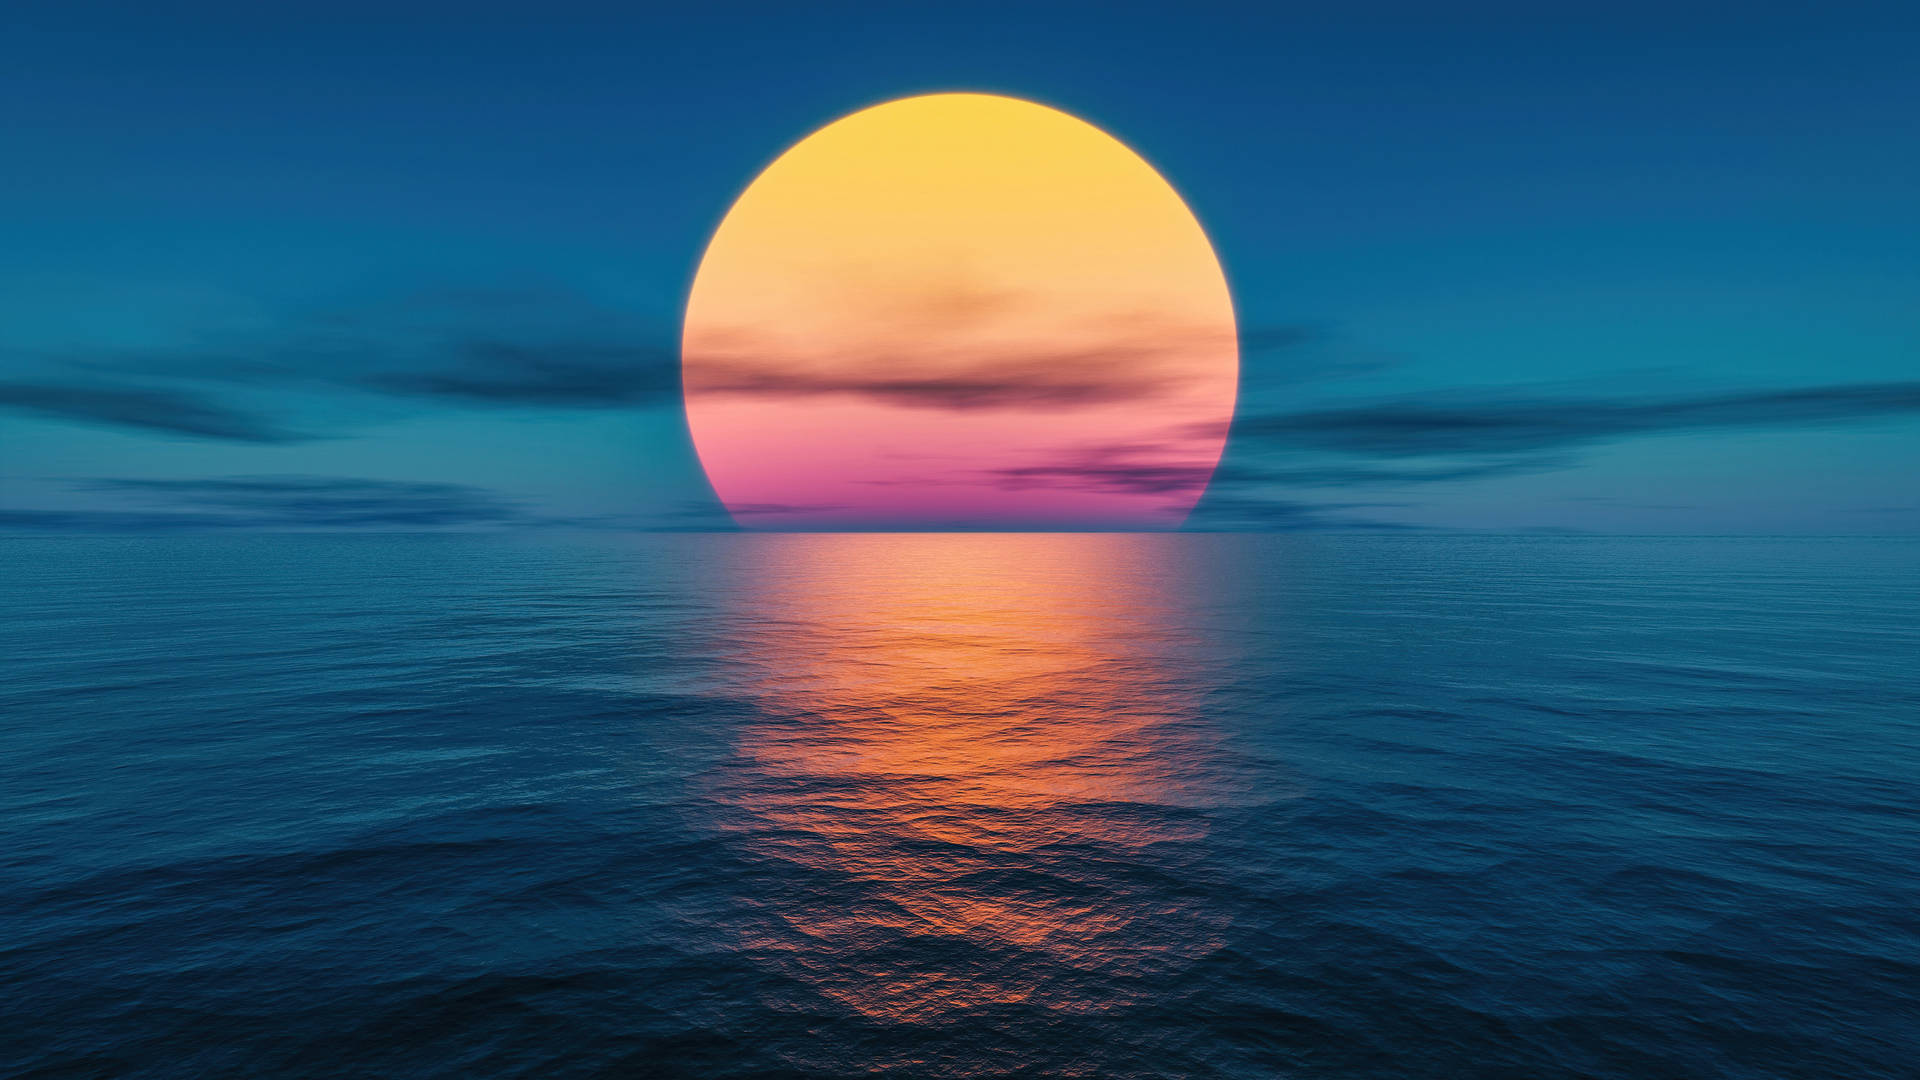 2560 X 1440 Orange Sun On Dark Blue Sea Water Background